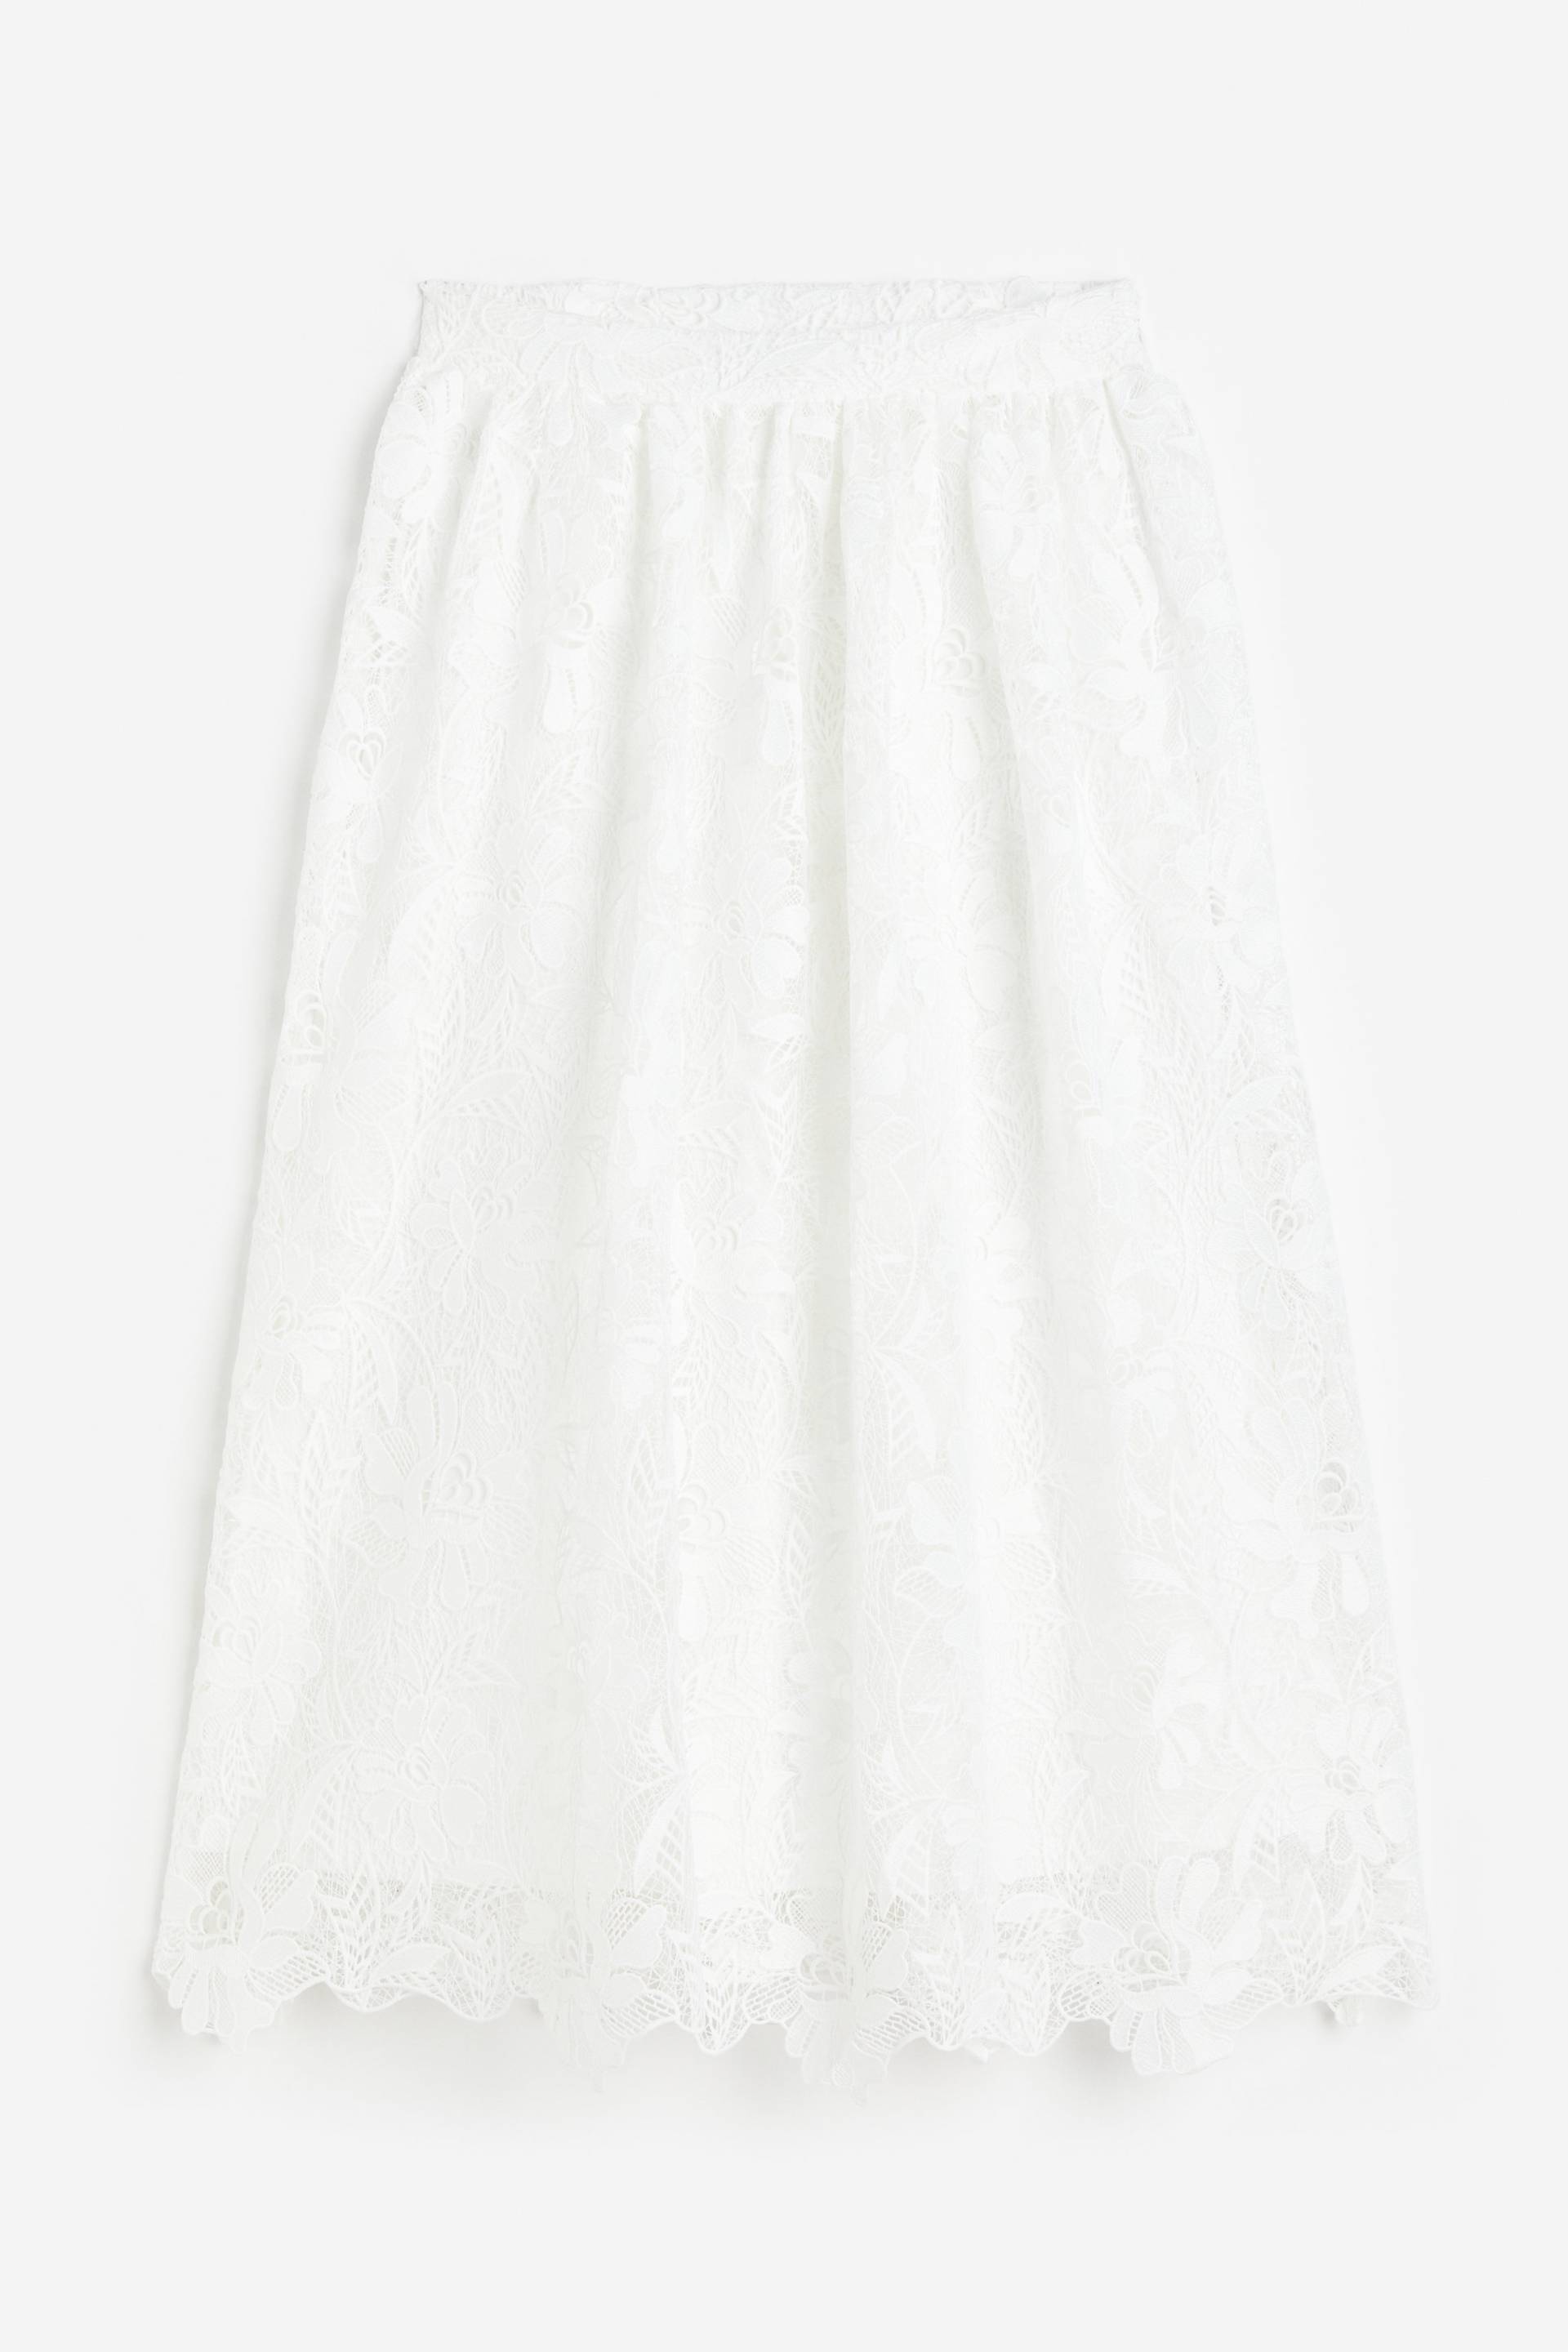 H&M Spitzenrock in A-Linie Weiß, Röcke Größe XS. Farbe: White von H&M